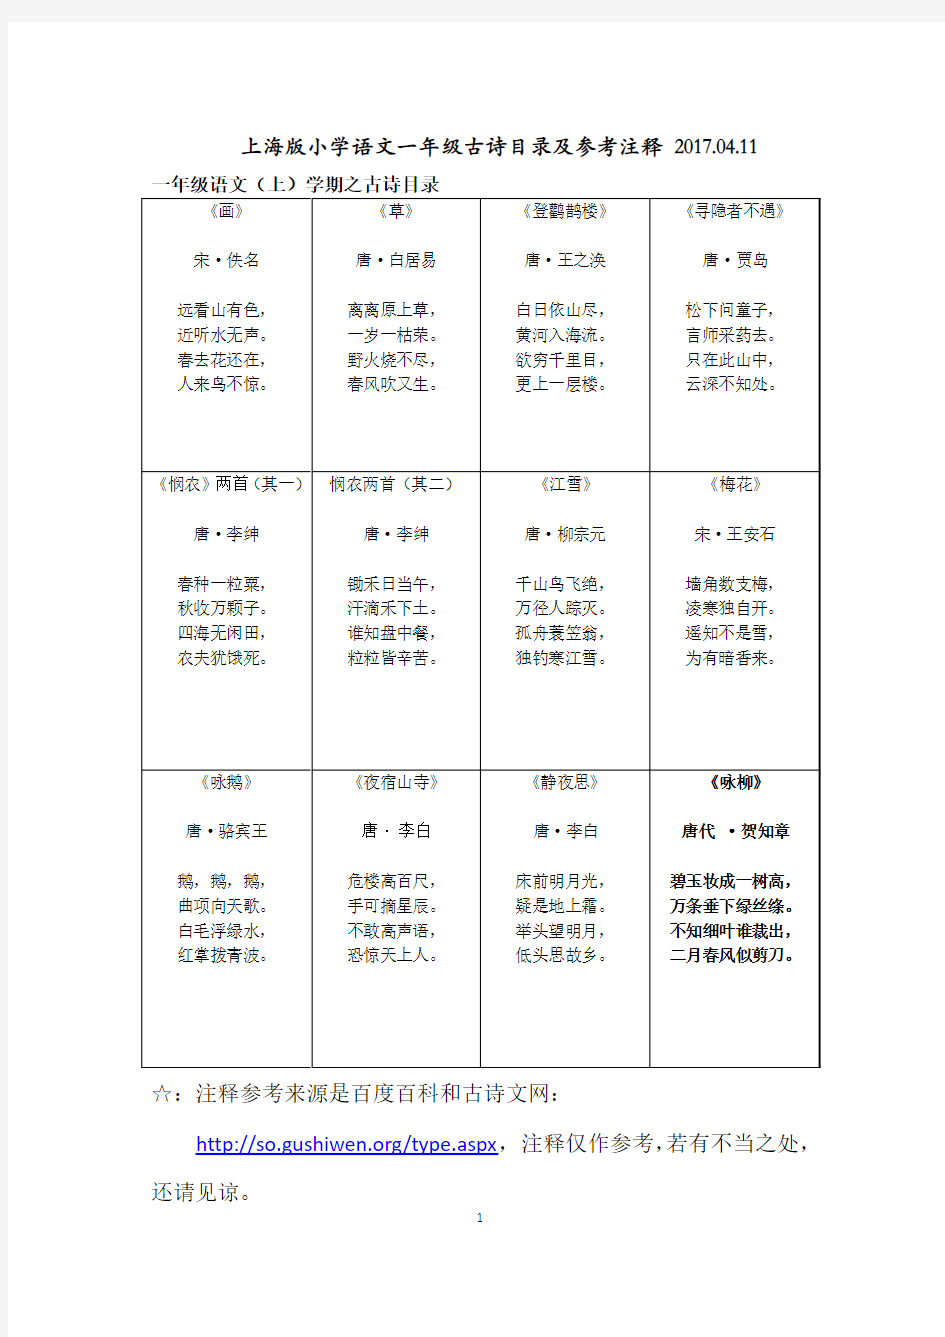 上海小学语文一年级古诗目录及参考注释 2017.04.11